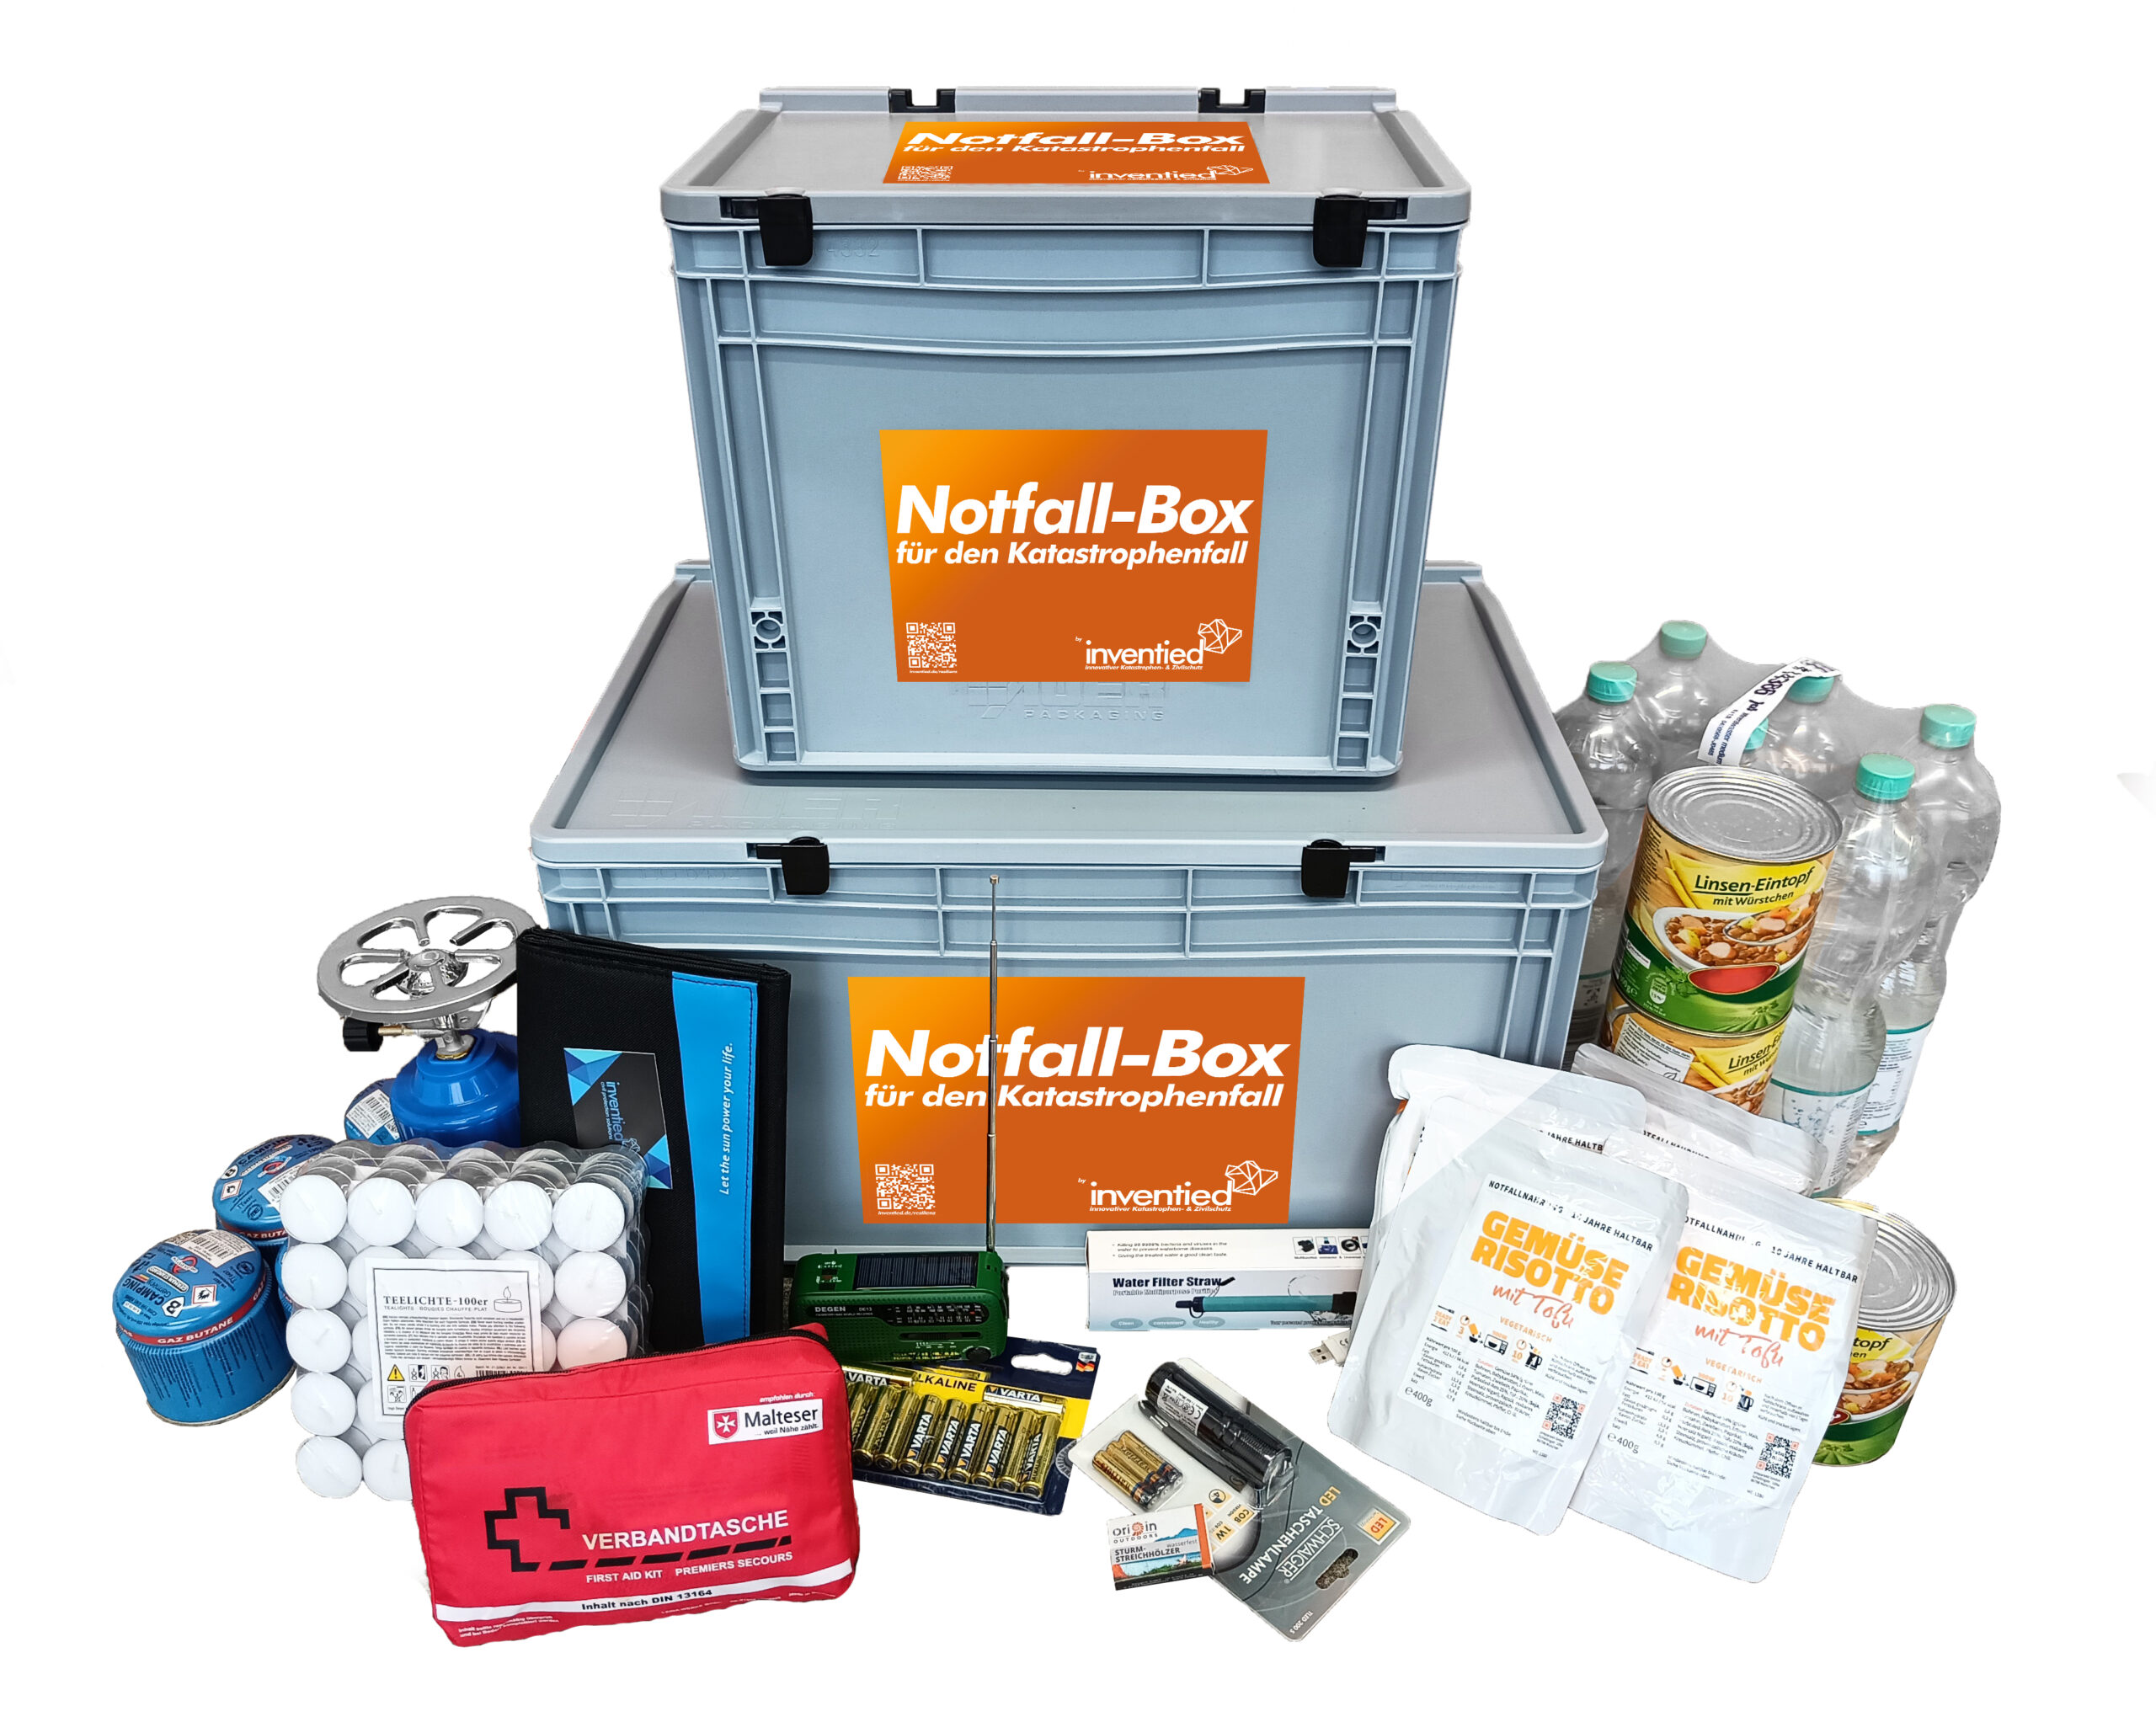 Notfall-Box mit Equipment für den Notfall